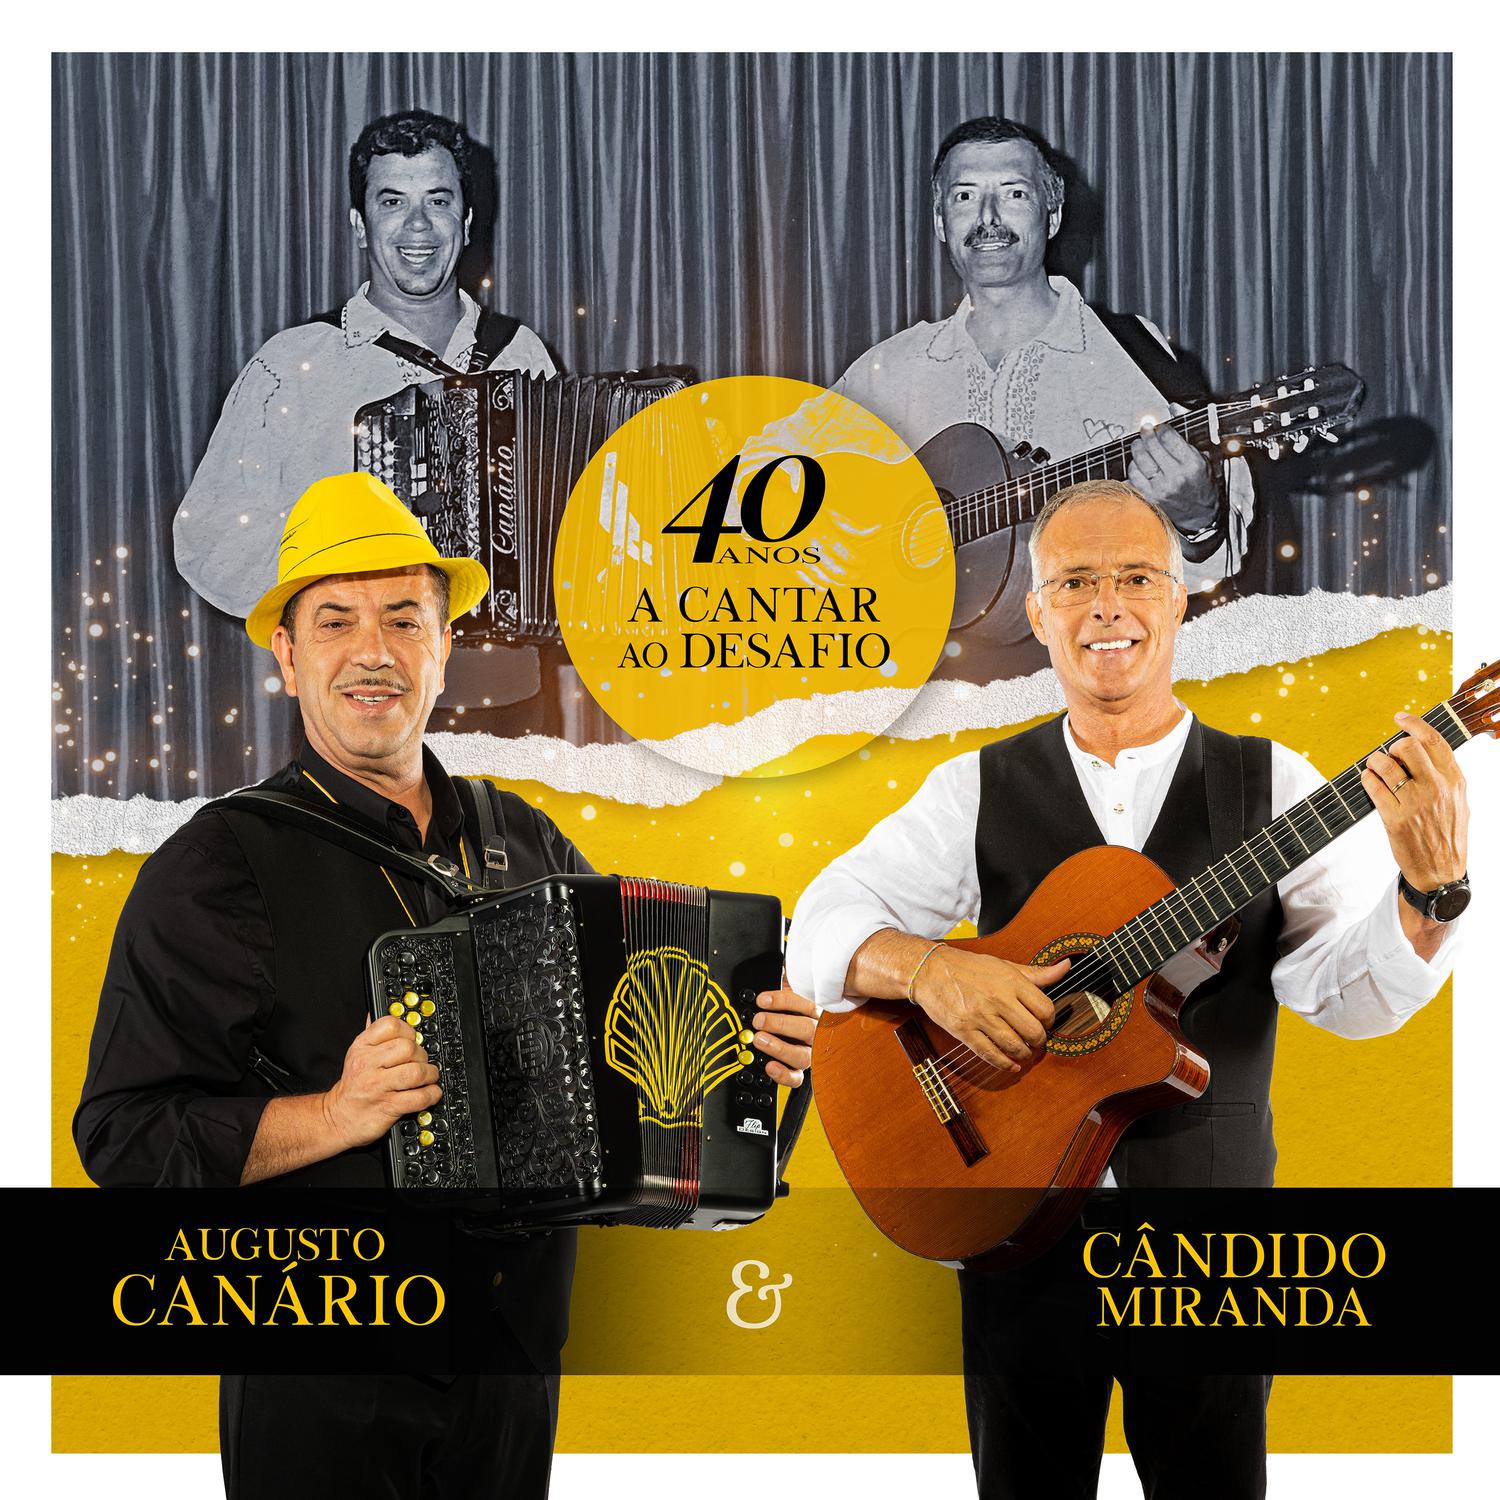 Augusto Canário & Amigos - Trinta E Cinco Anos (2017)